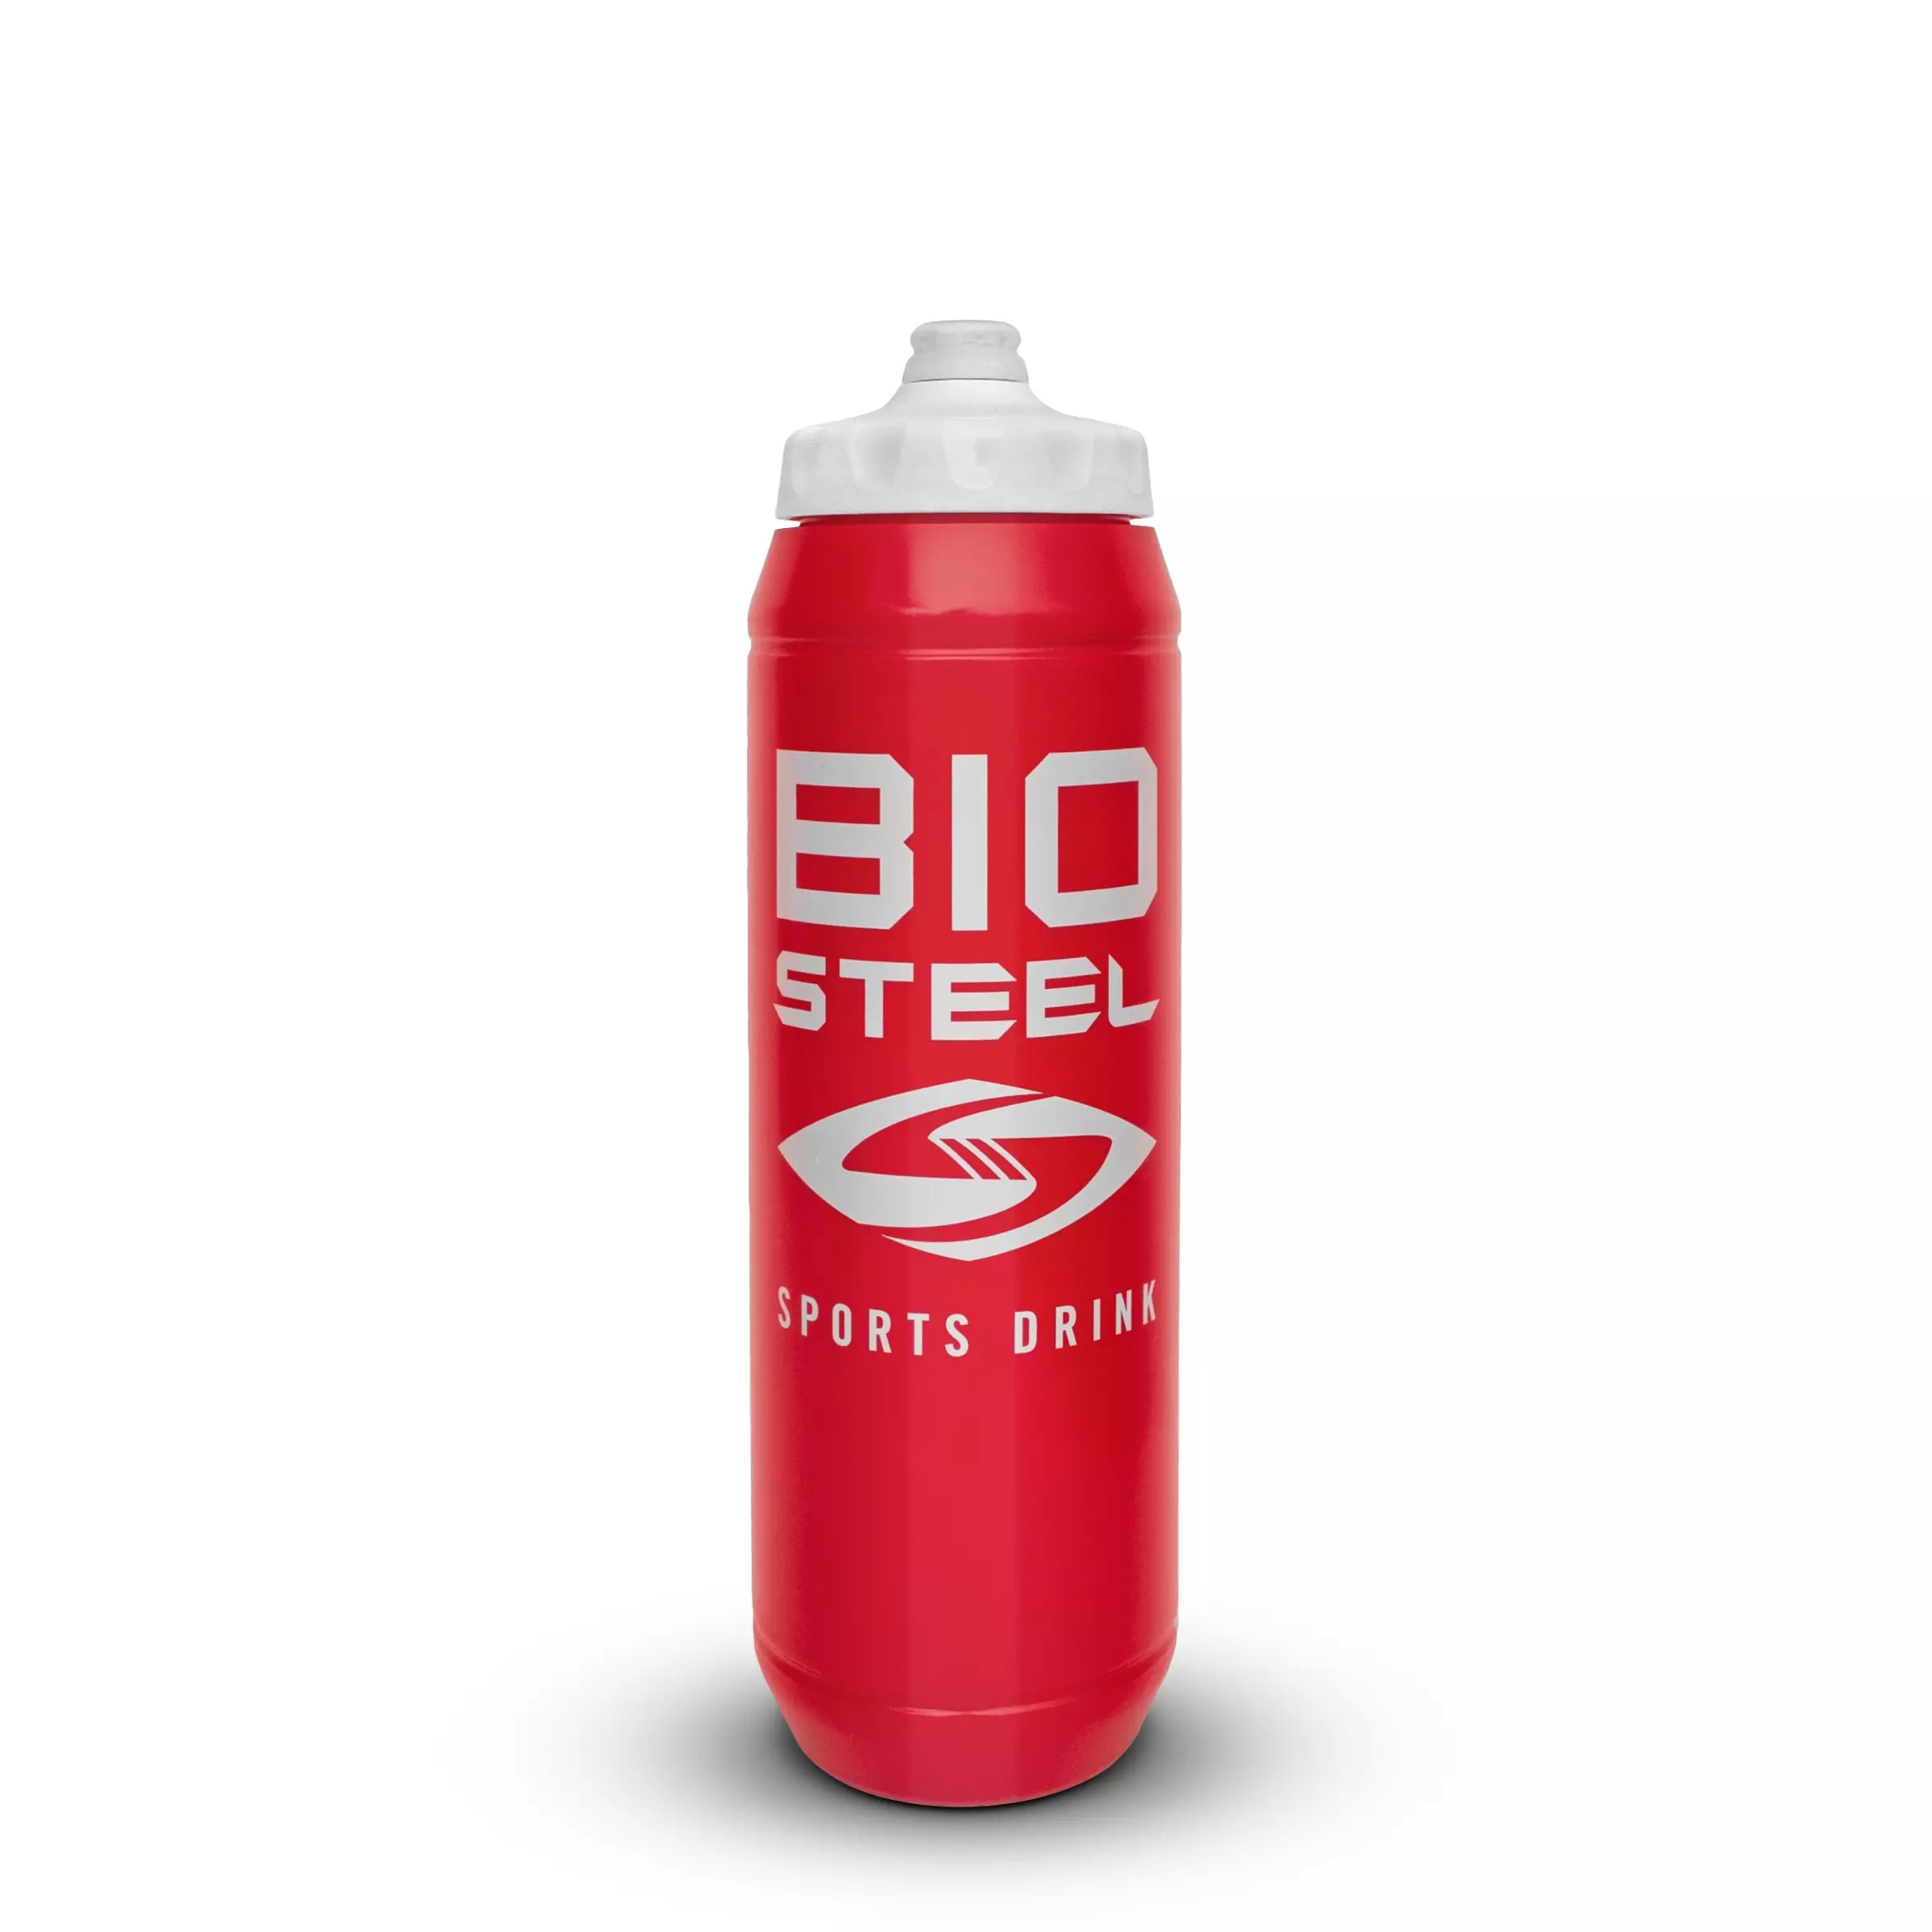 Бутылка для воды хоккейная. Хоккейная бутылка для воды. Бутылка для воды Bio Steel. Хоккейная бутылка био стил. Хоккейная бутылка для воды 1000мл.